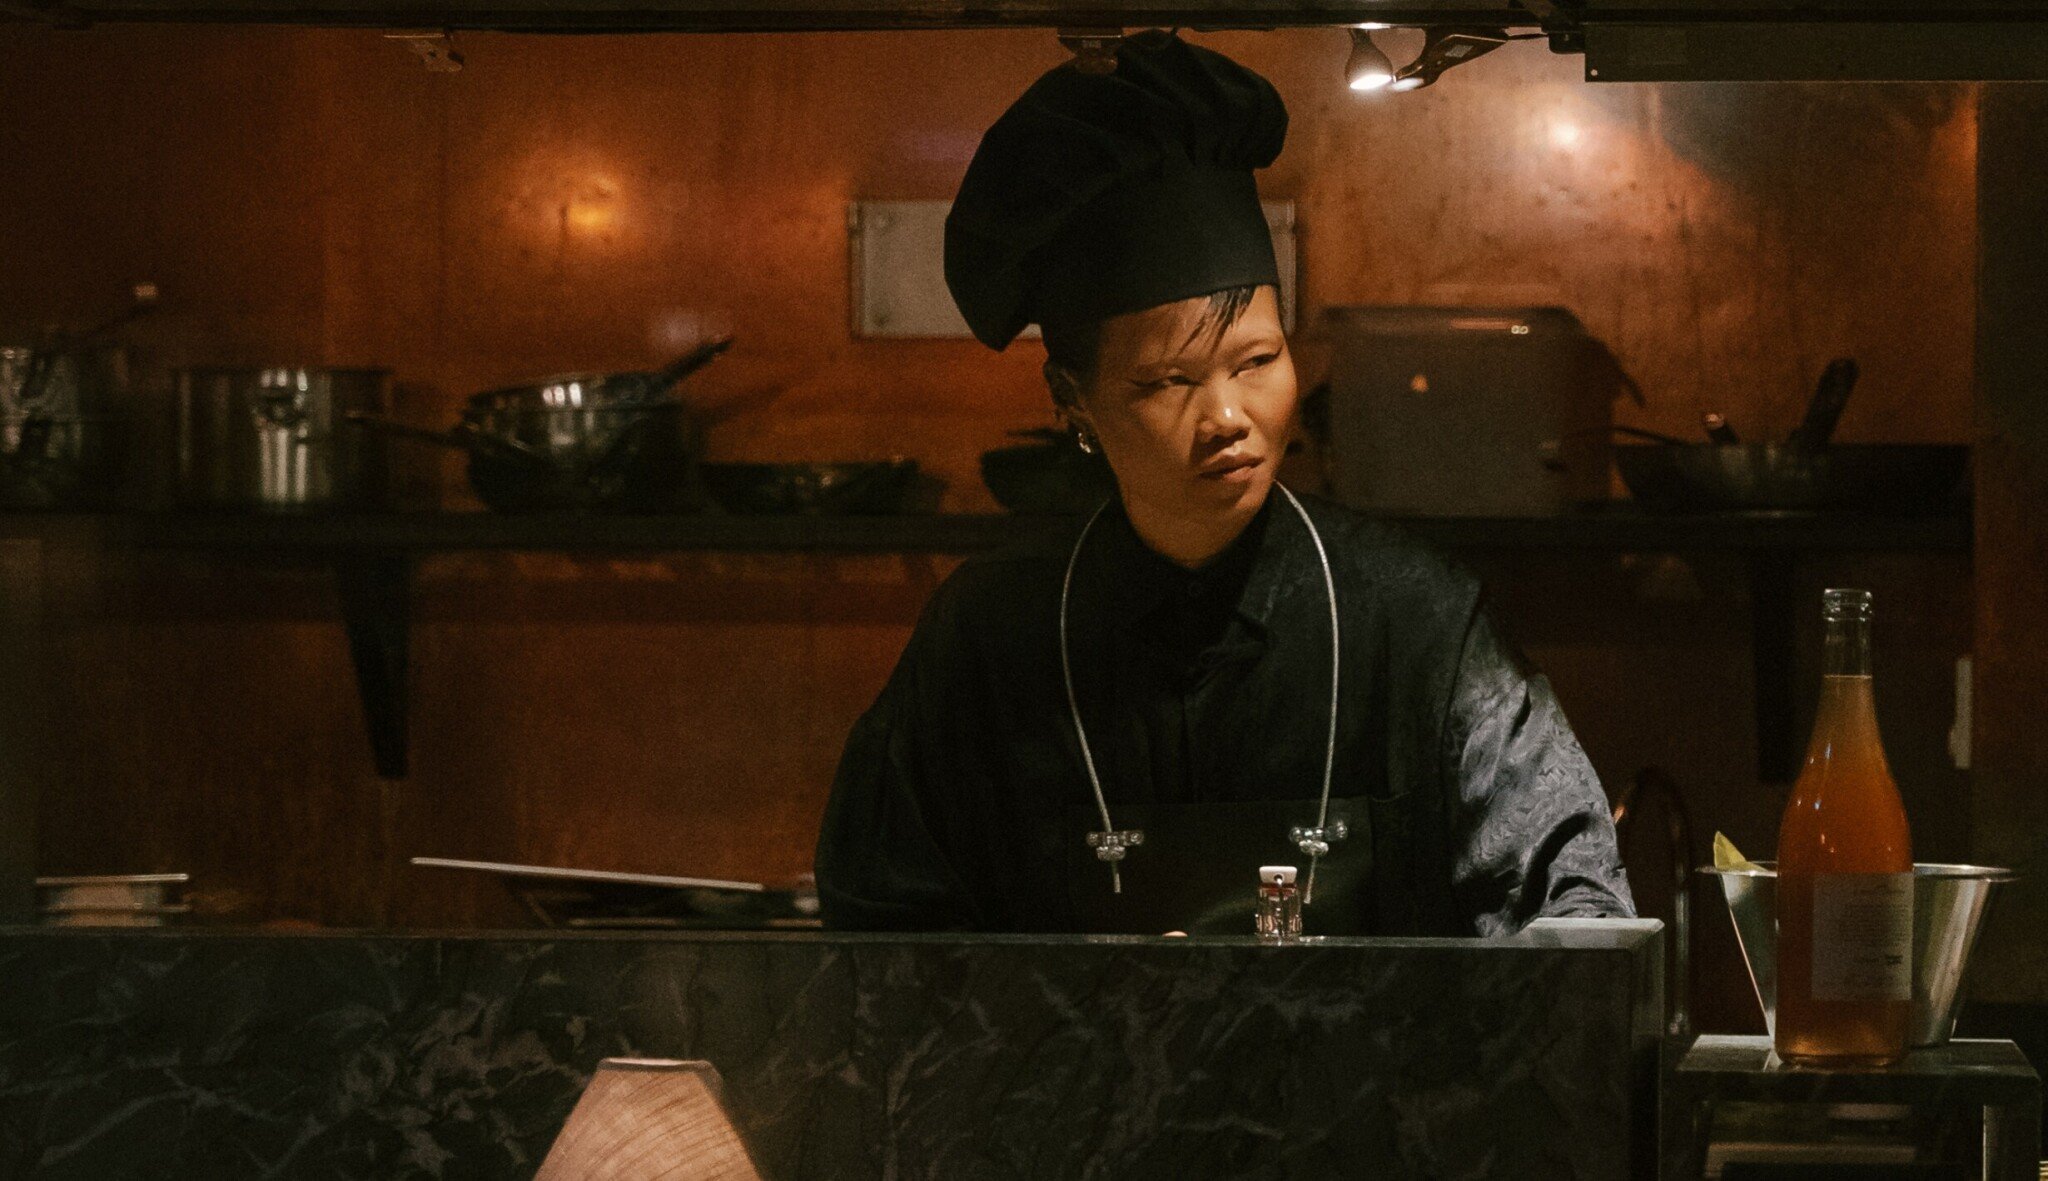 Móda, extravagance, catering. Kuchařka Eva Che kombinuje jedinečný styl i jídlo